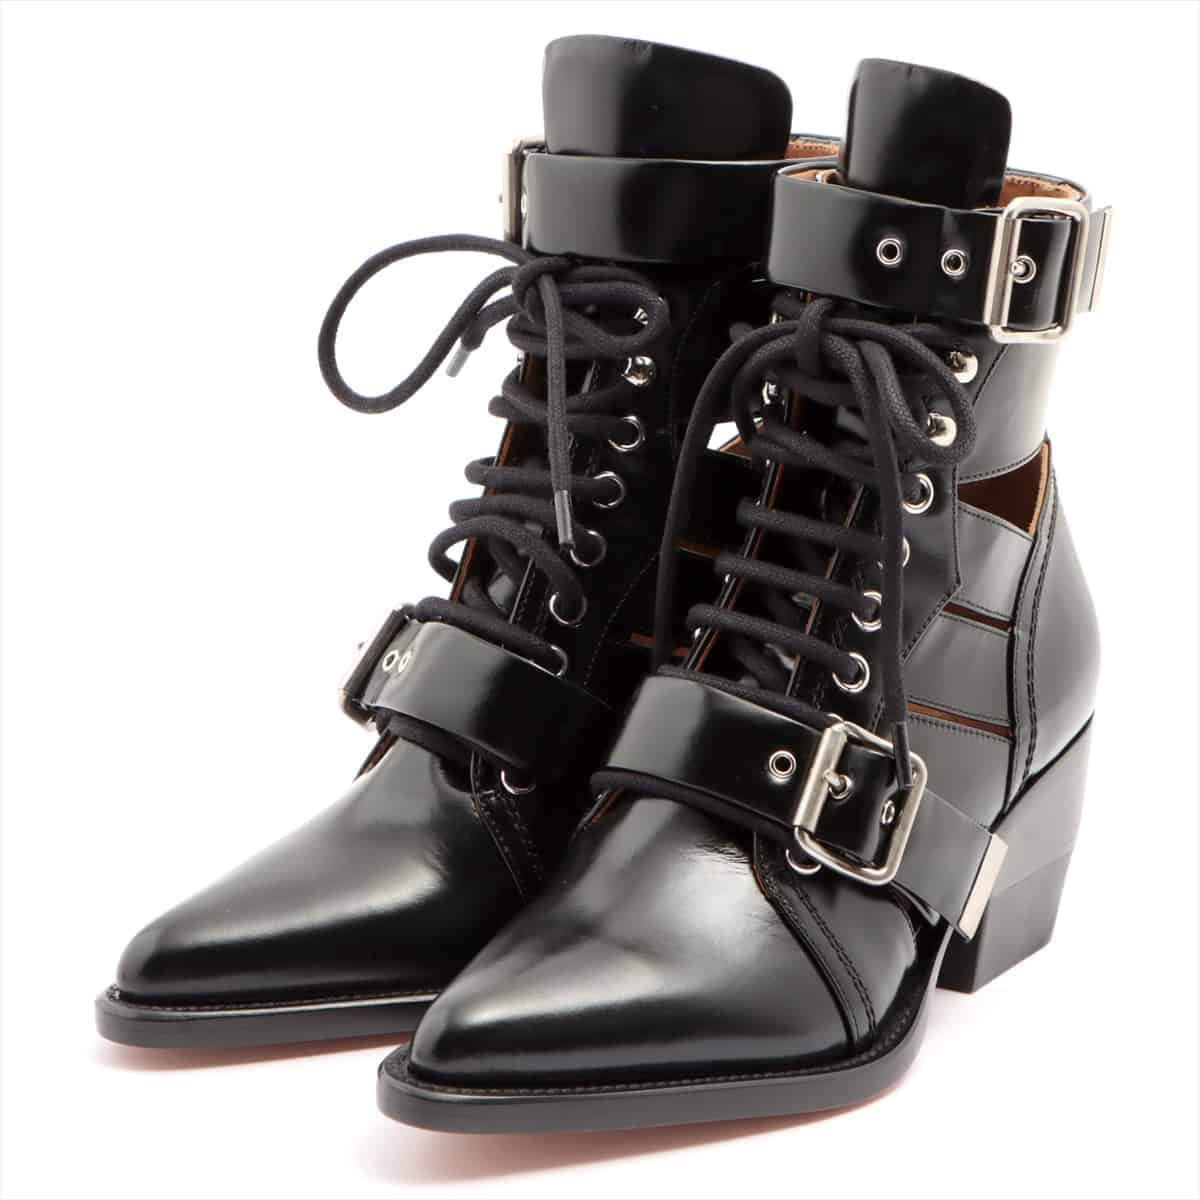 Chloe RYLEE Leather Boots 35 Ladies' Black